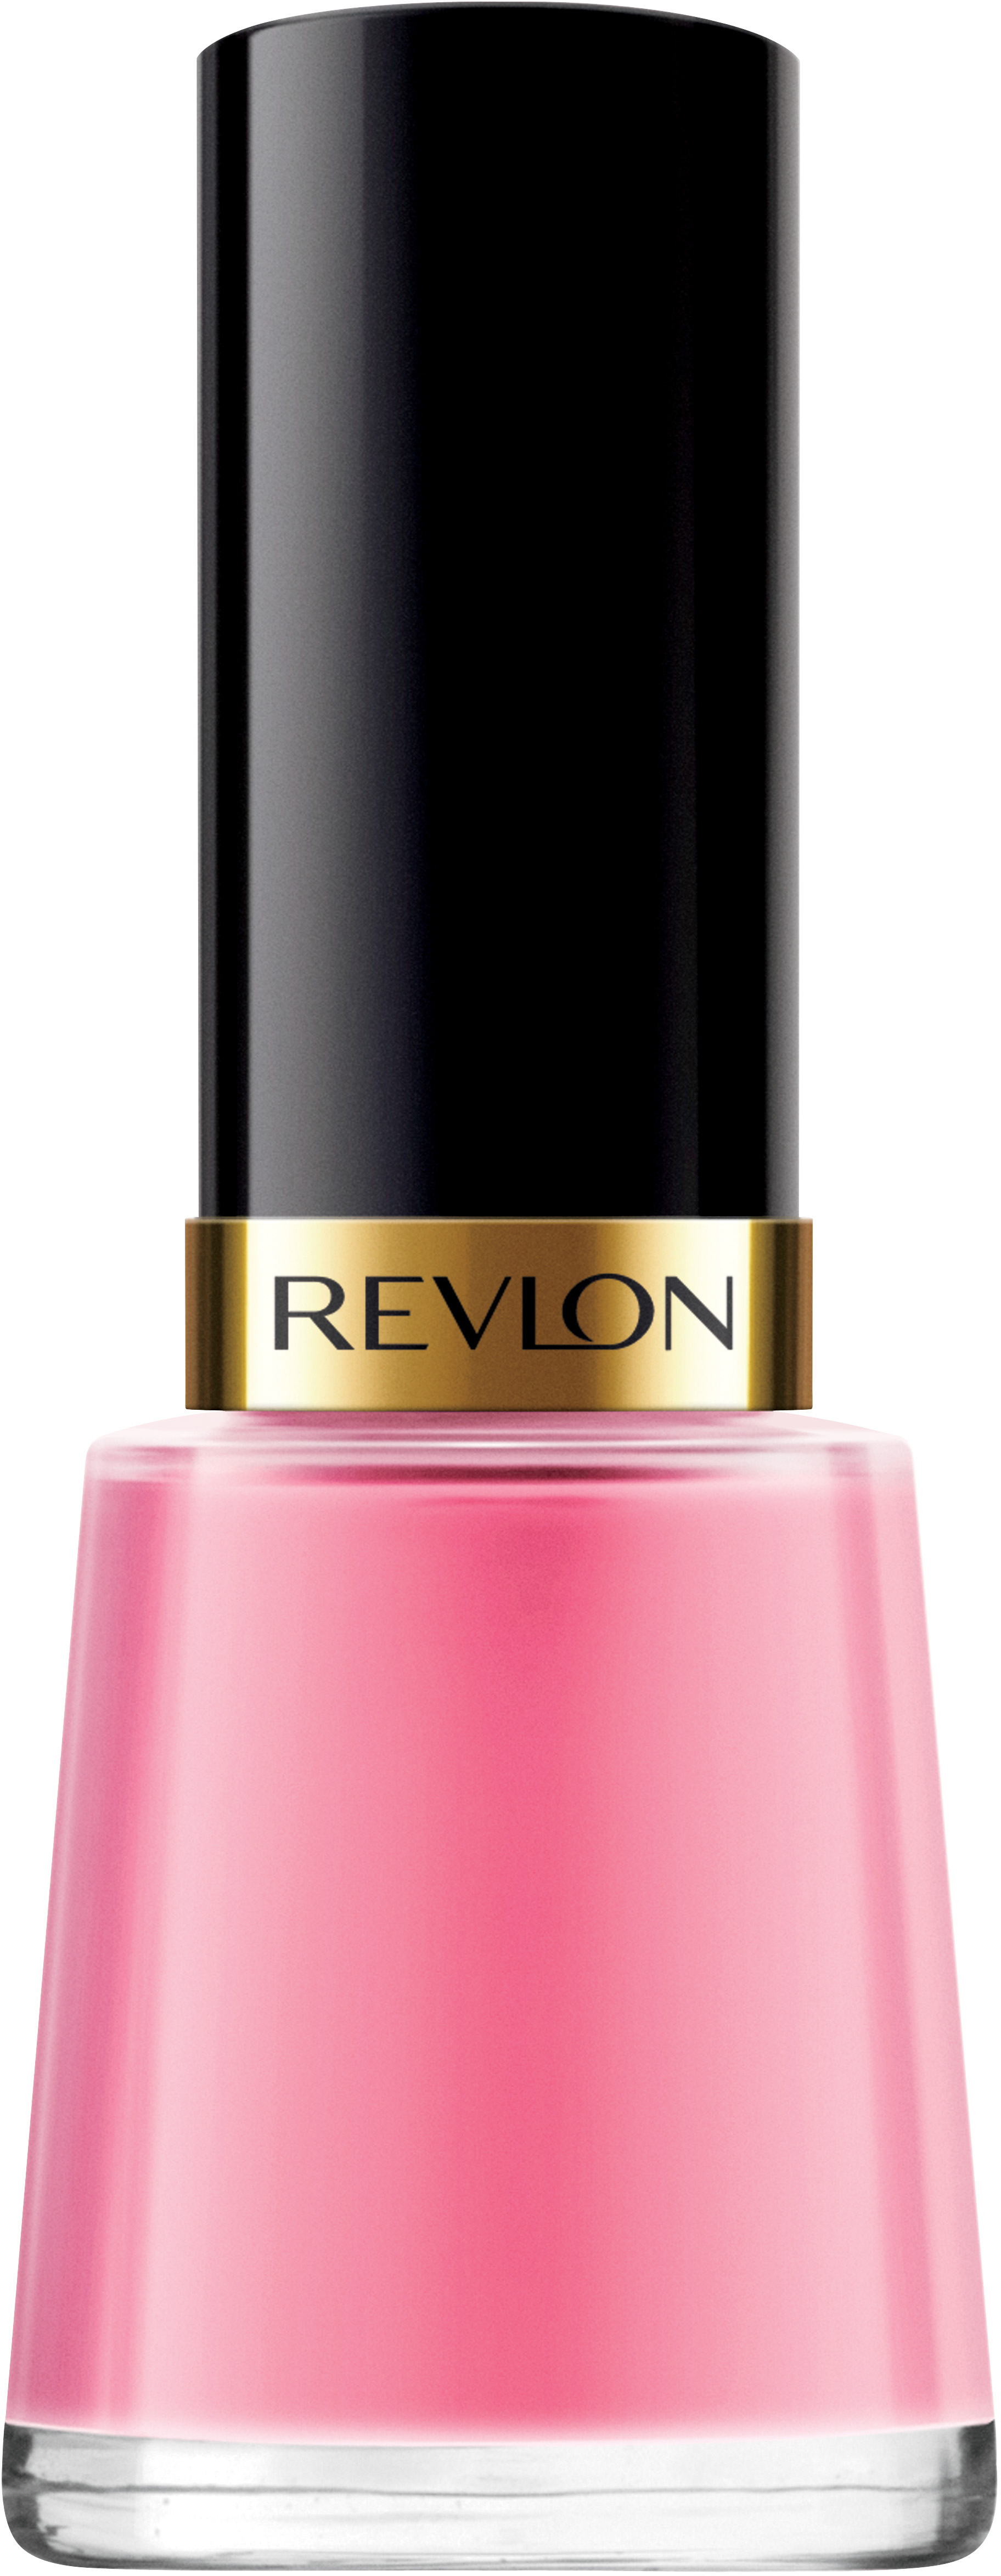 Revlon Cosmetics Nail Enamel 280 Bubbly